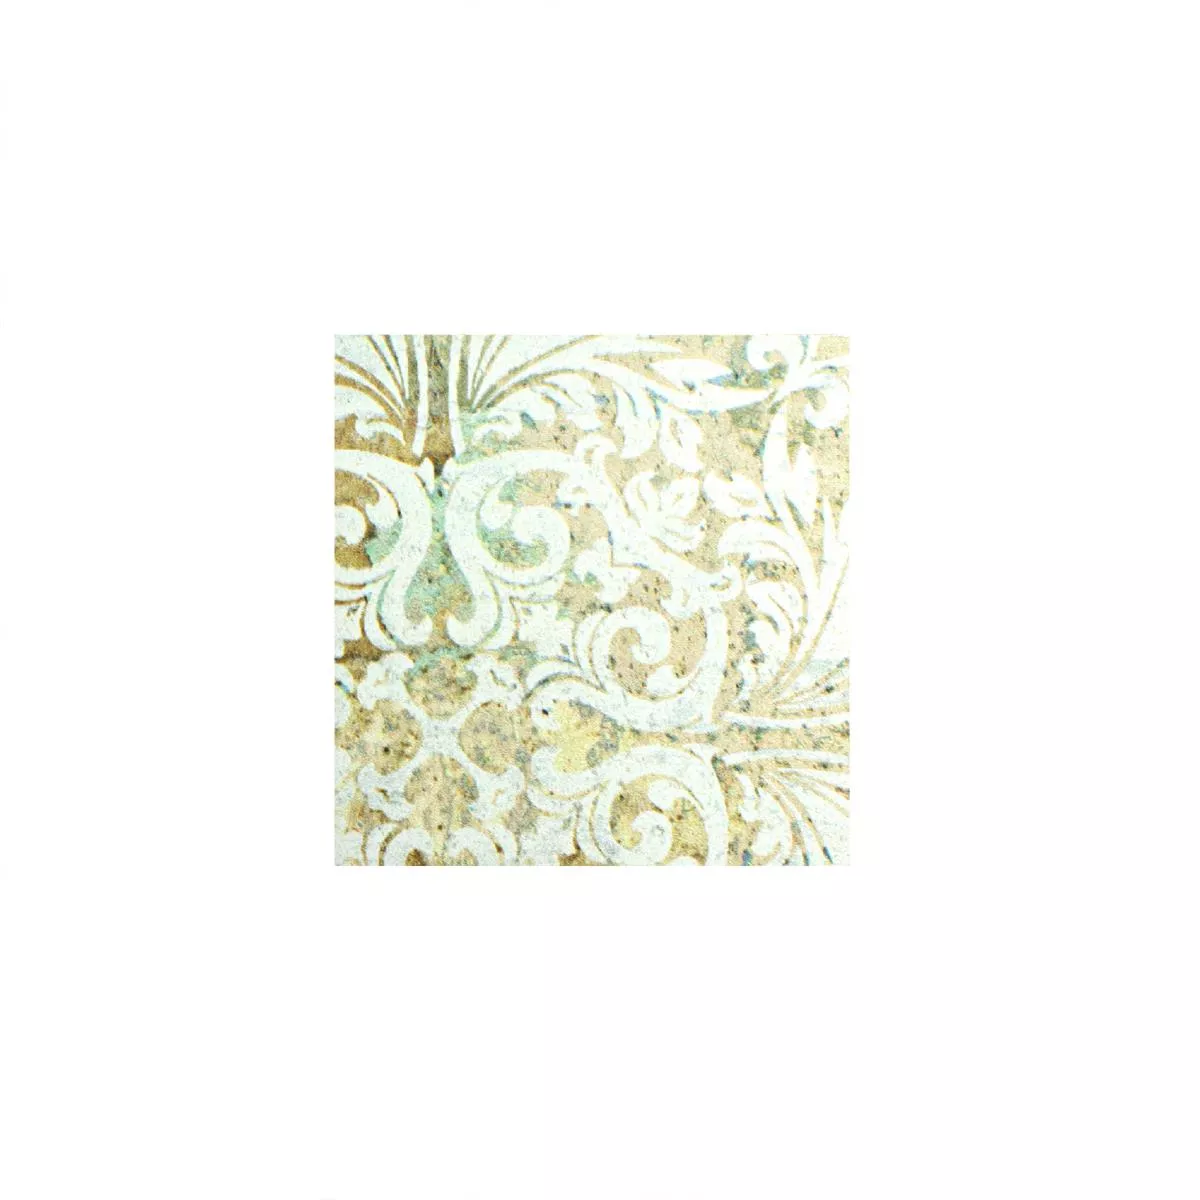 Campione Ceramica Mosaico Piastrelle Bellona Effetto Di Colore Chiaro